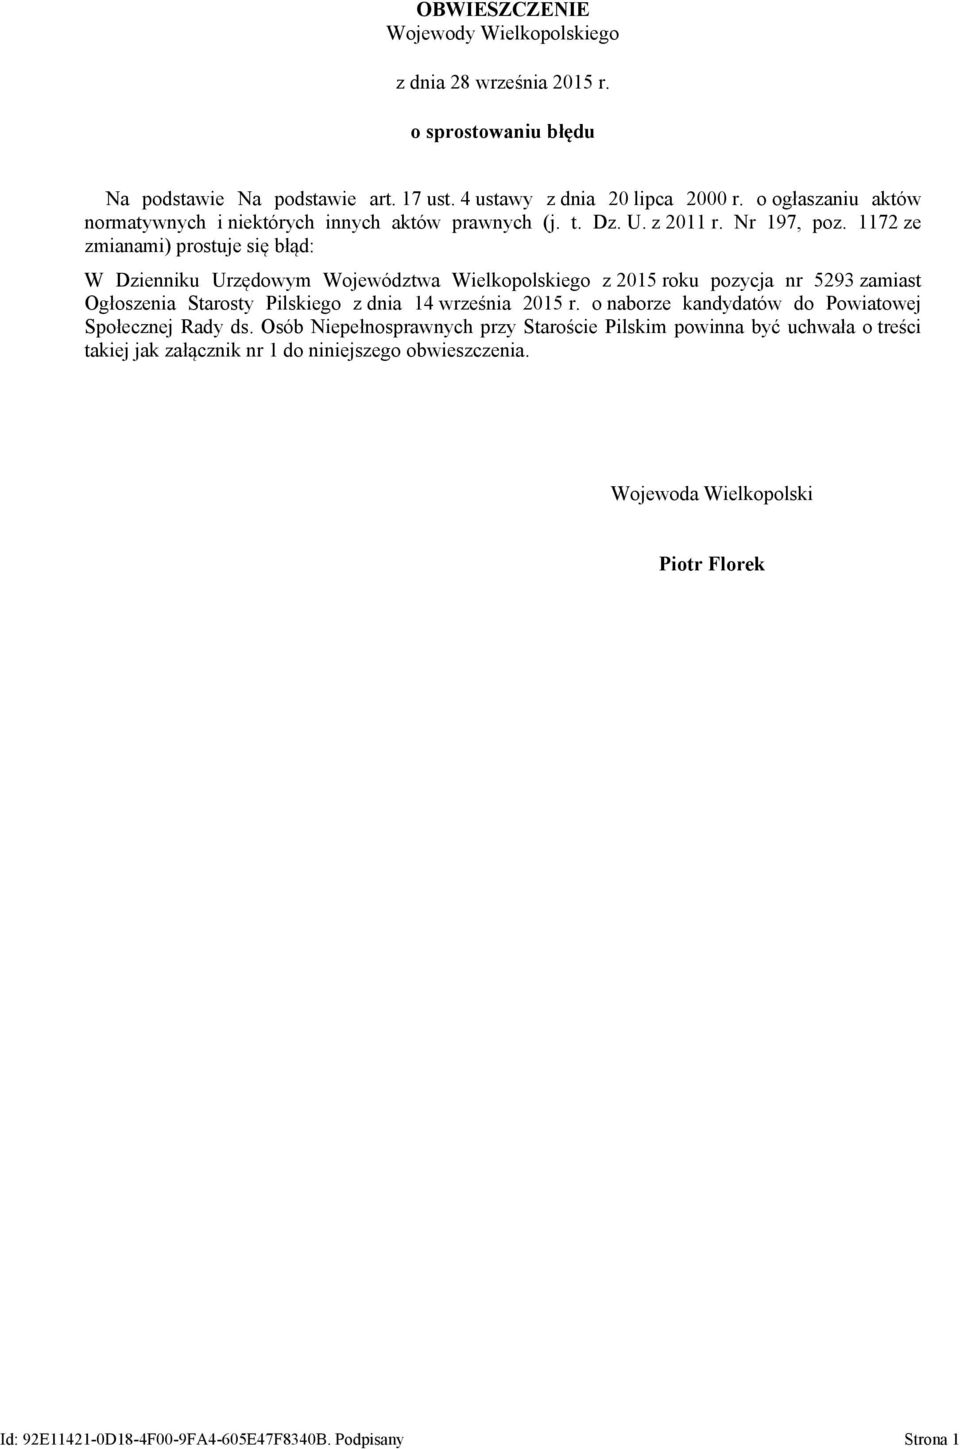 1172 ze zmianami) prostuje się błąd: W Dzienniku Urzędowym Województwa Wielkopolskiego z 2015 roku pozycja nr 5293 zamiast Ogłoszenia Starosty Pilskiego z dnia 14 września 2015 r.